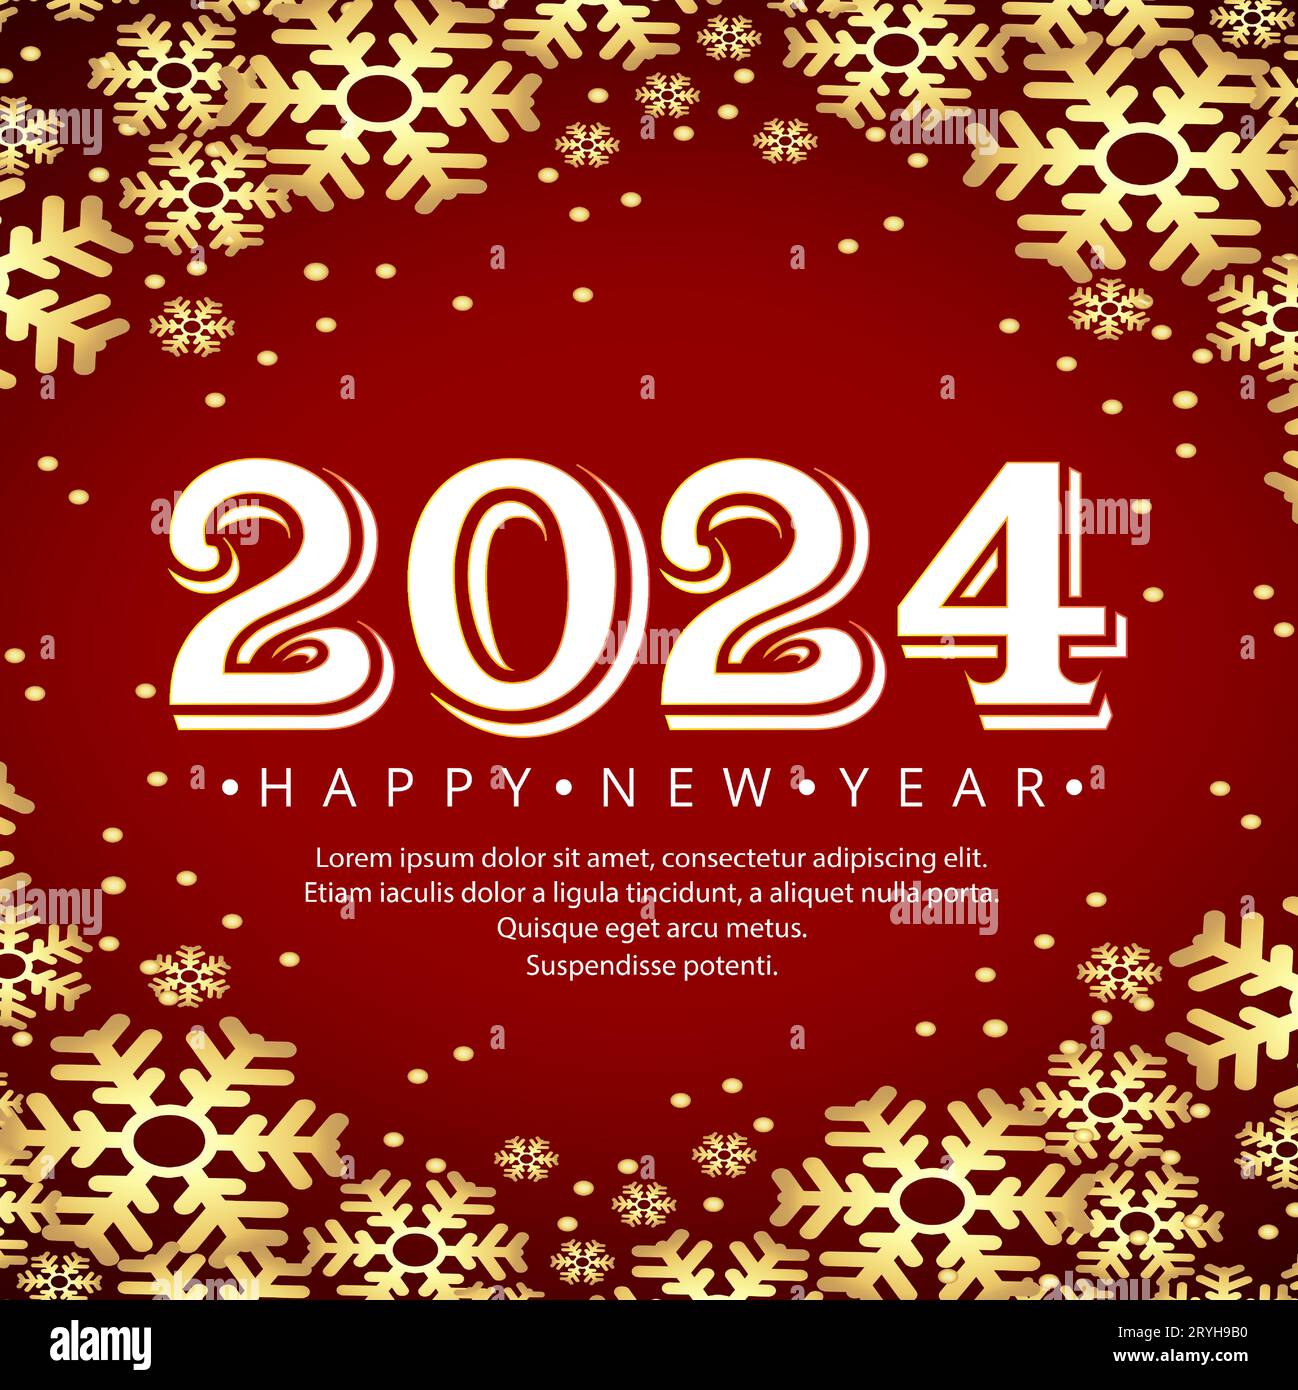 Year 2024 Banque d'images vectorielles - Alamy